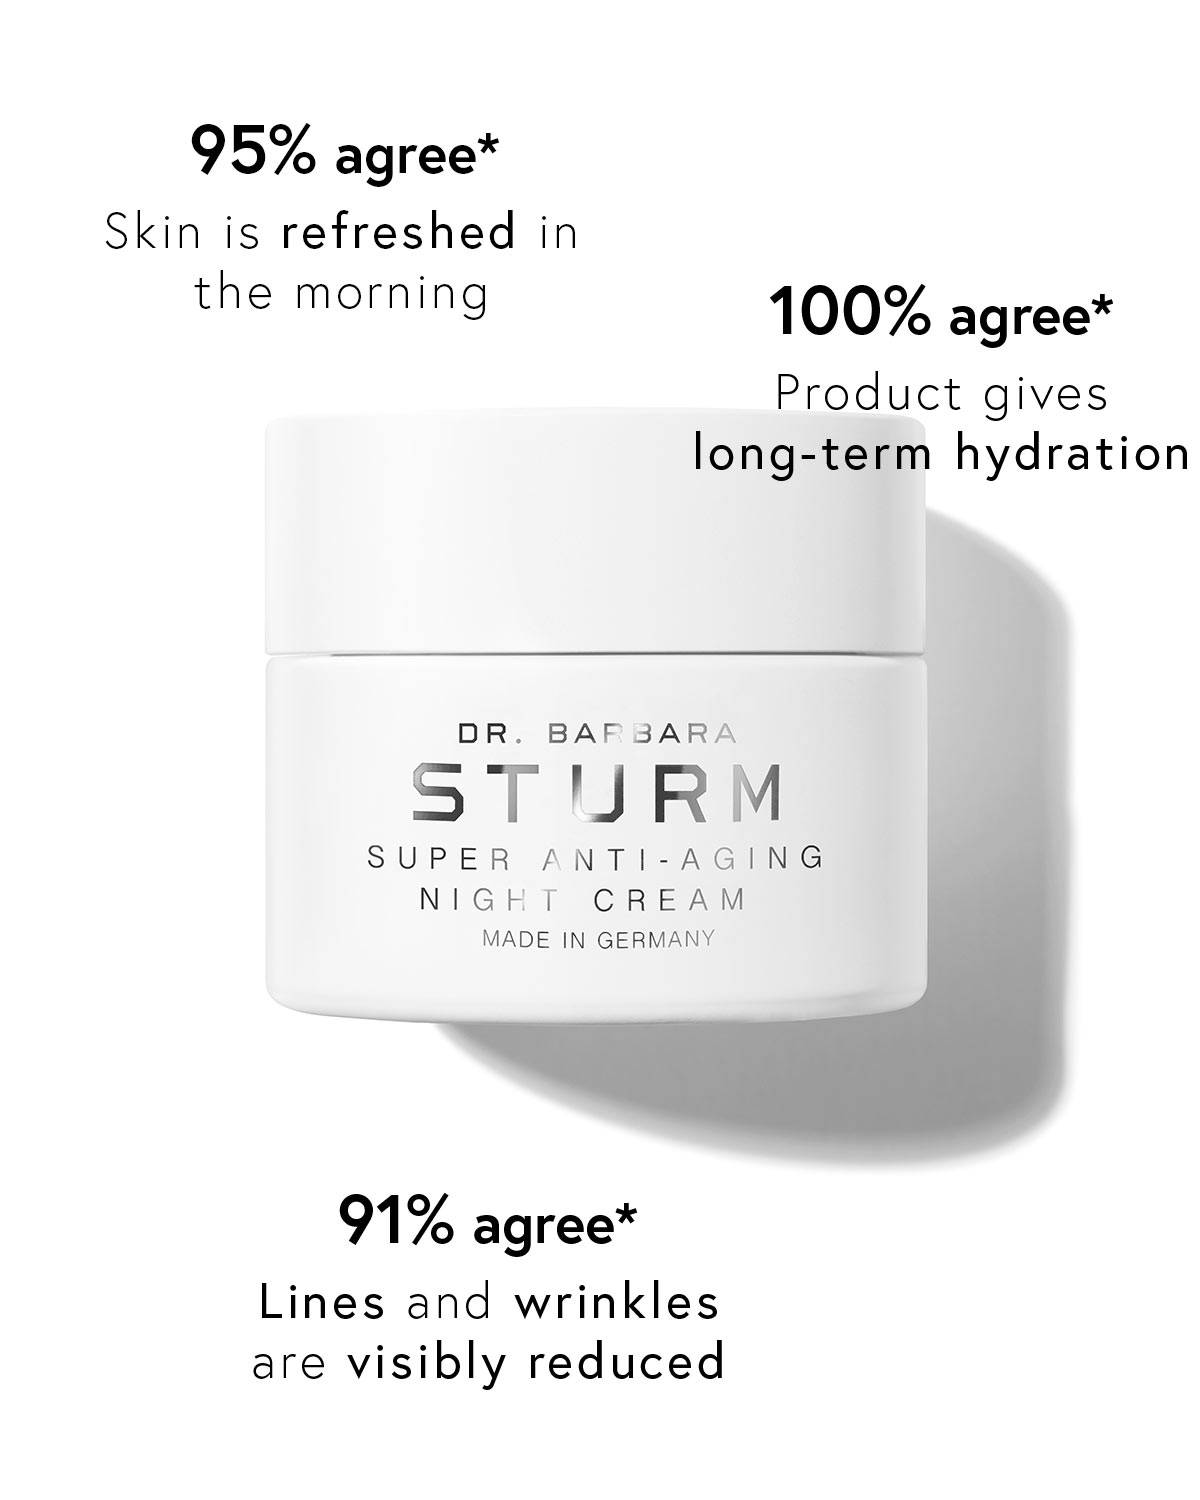 super anti-aging night cream 